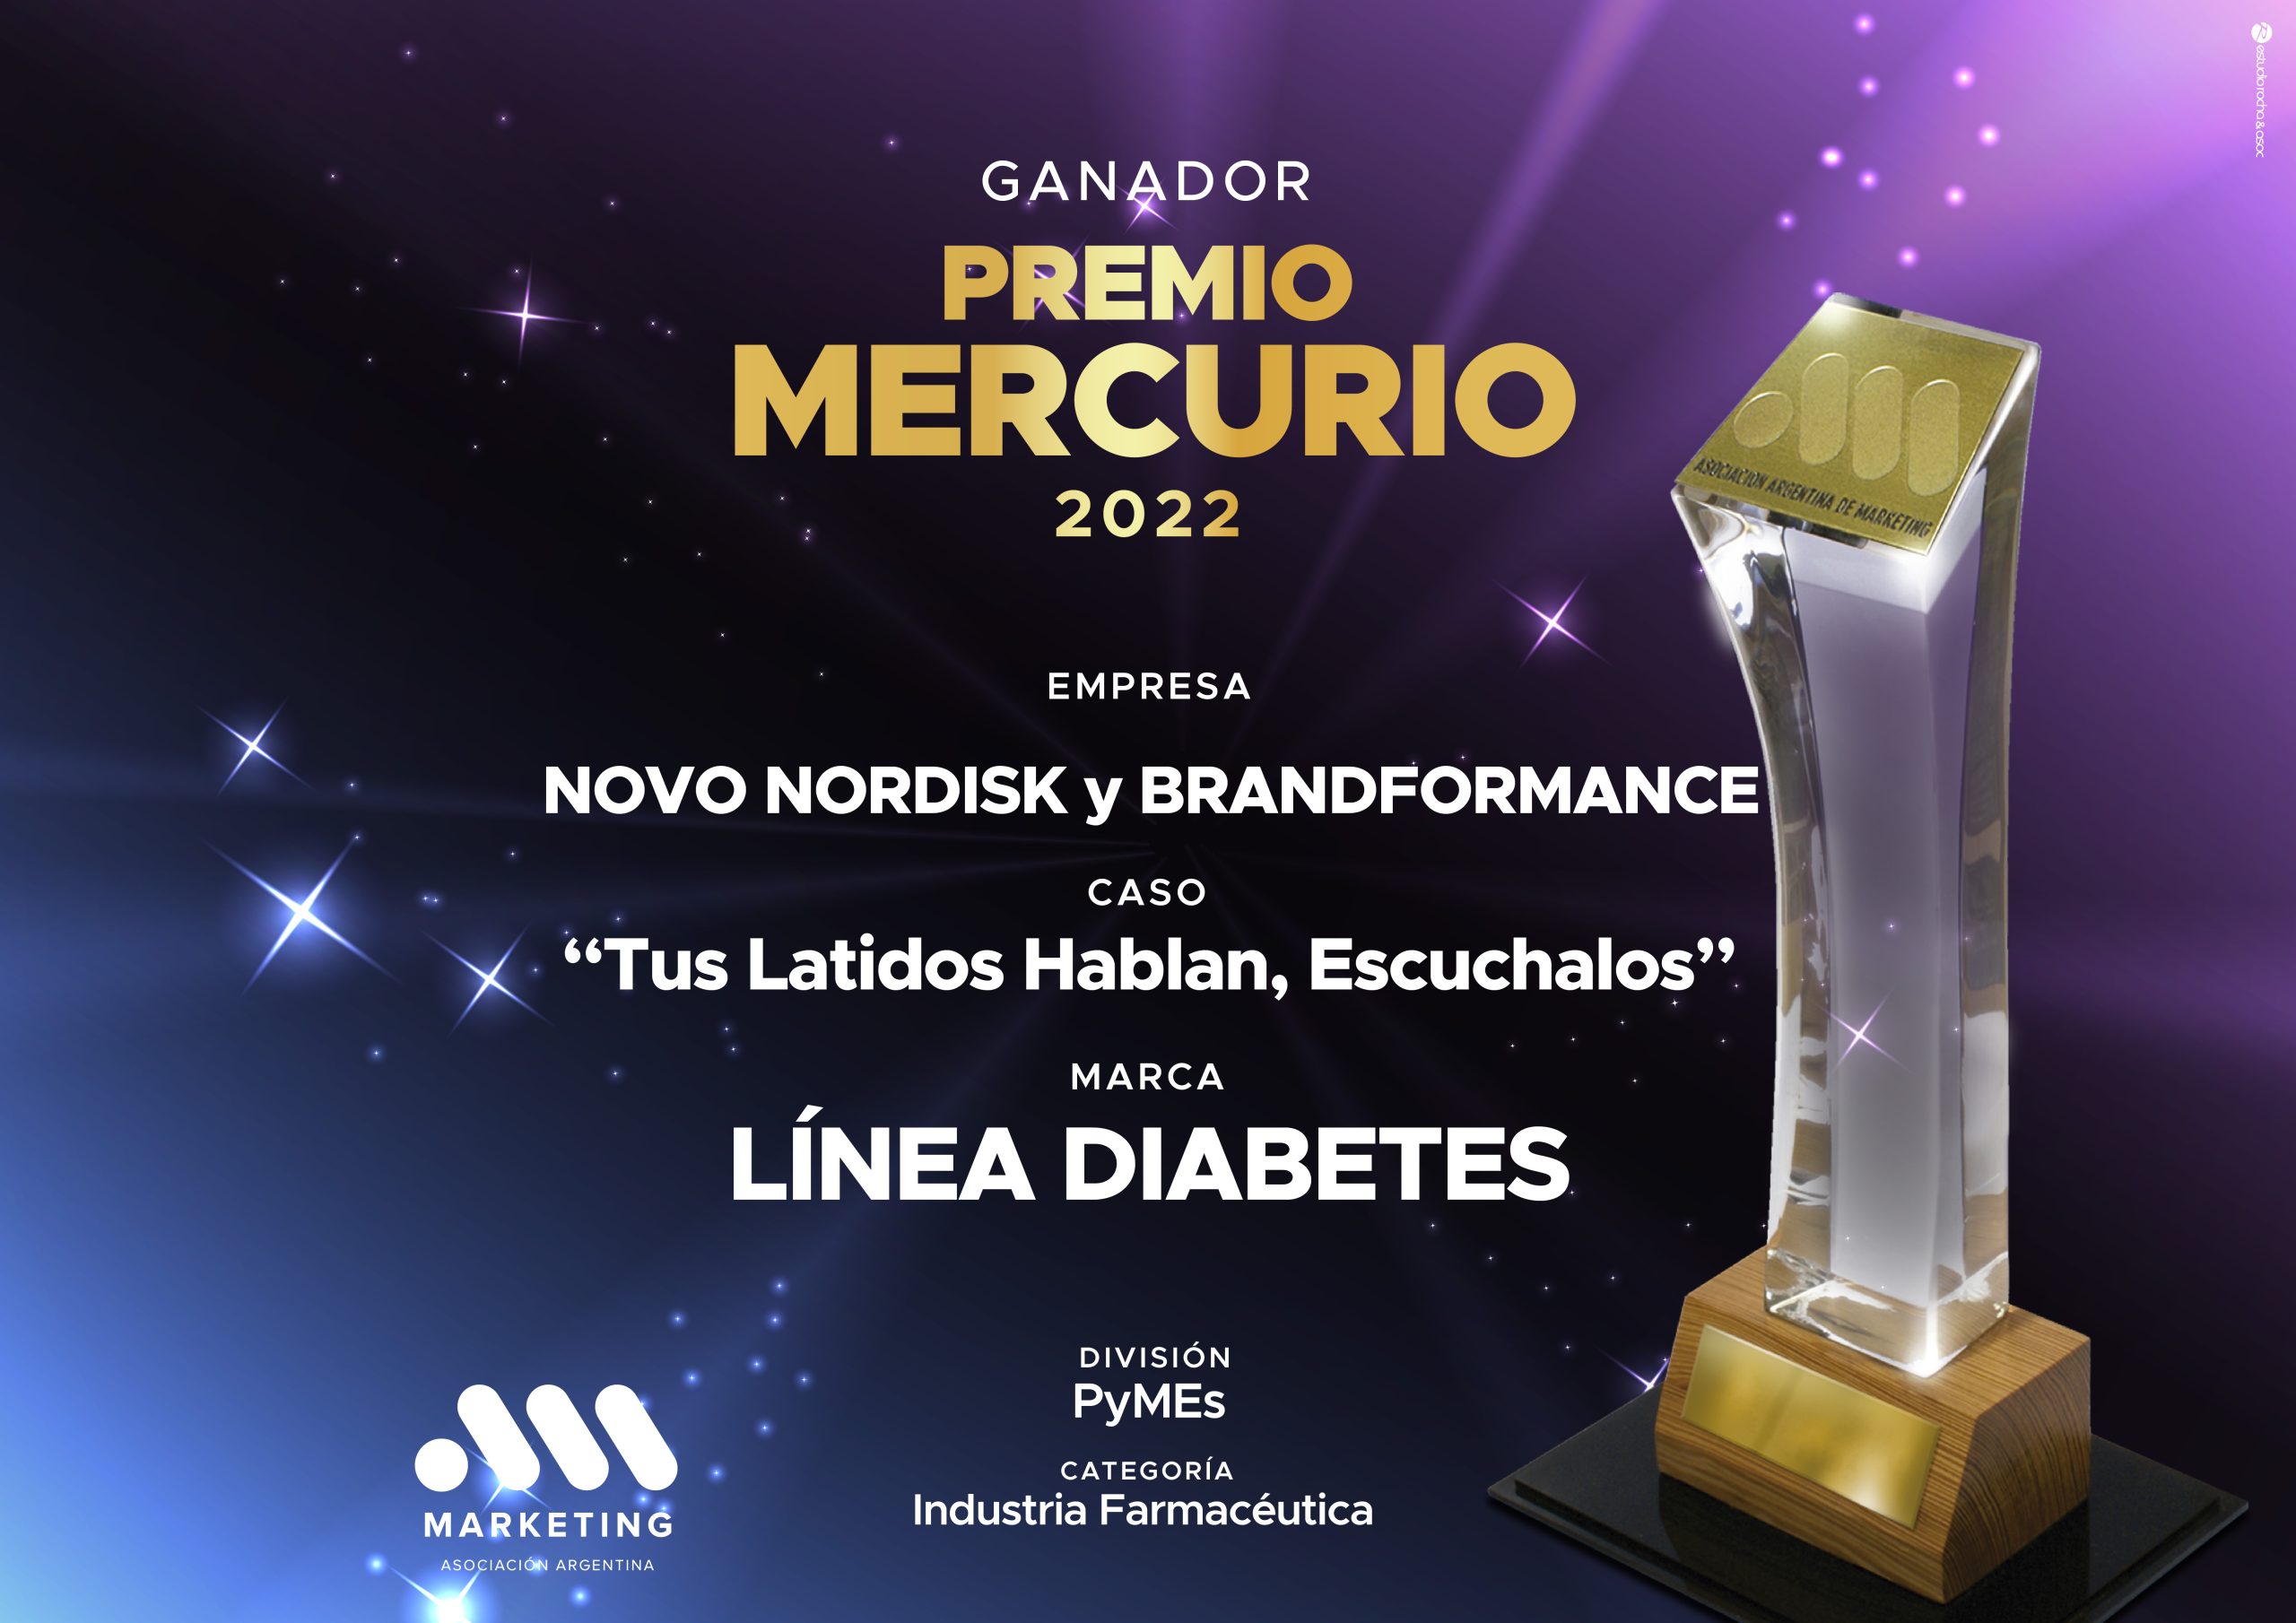 Premios Mercurio – Brandformance Ganador de Mejor Camapaña en Industria Farmaceutica – Novo Nordisk